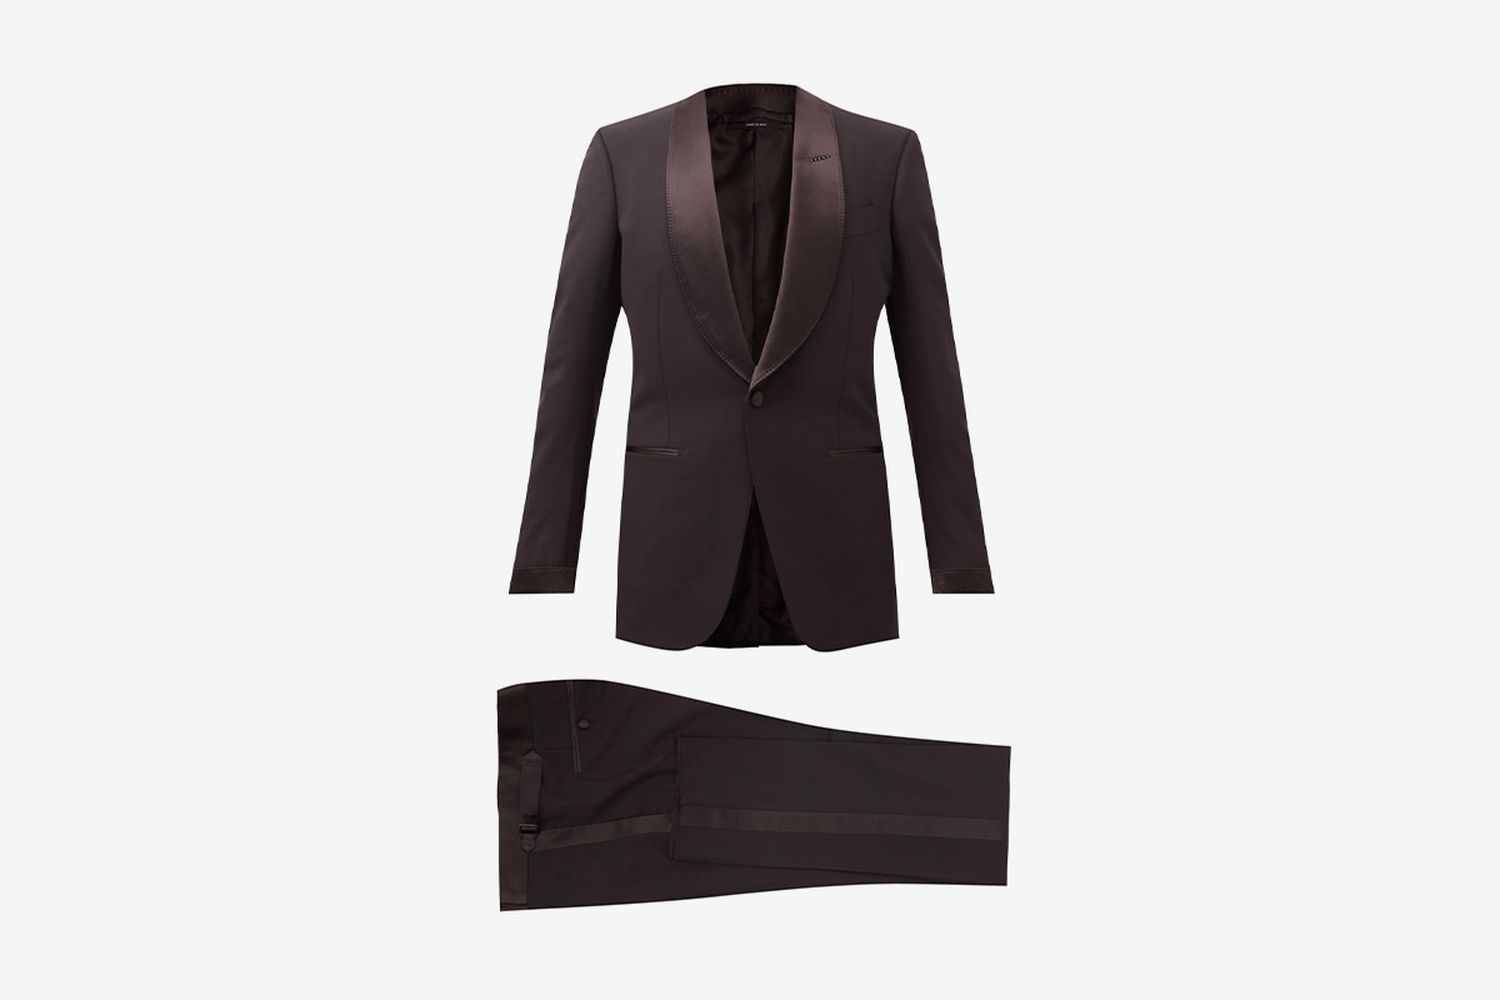 Grain de Poudre Tuxedo Suit